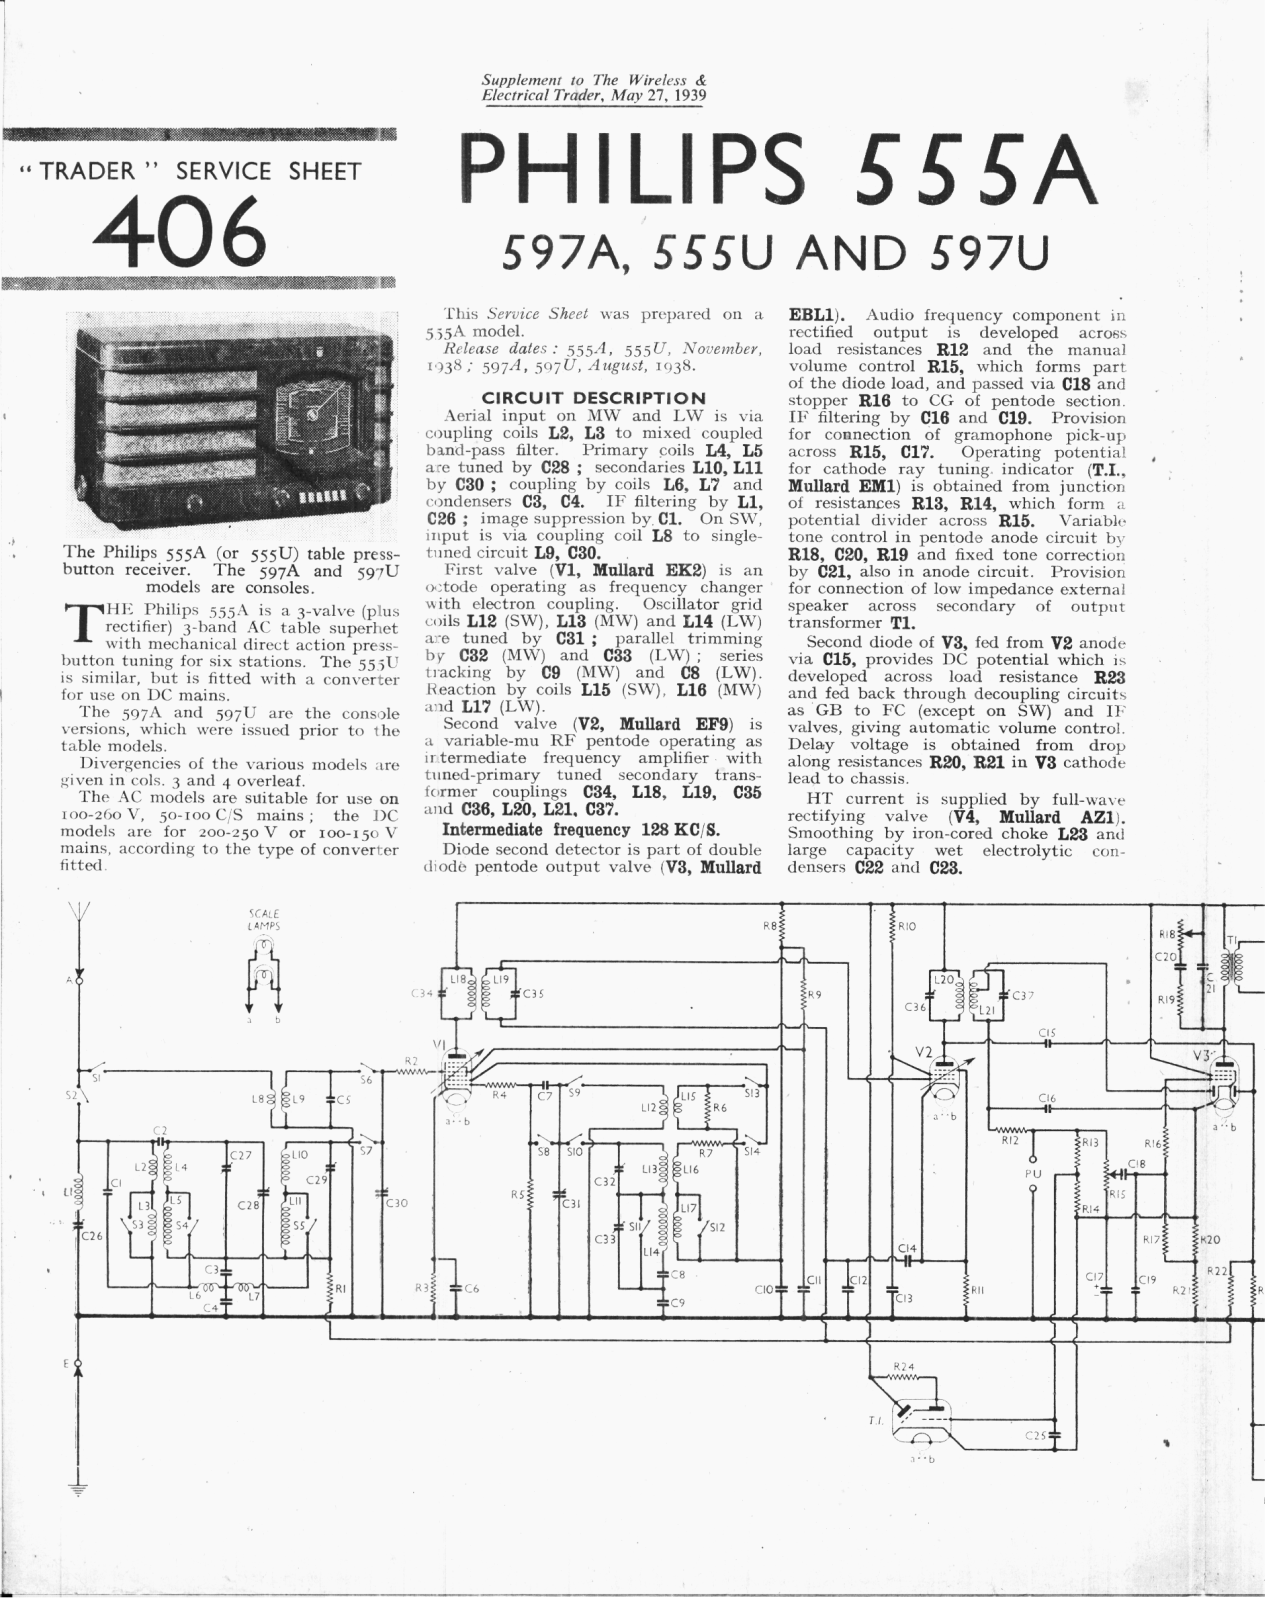 Philips 597-U, 555-A, 597-A, 555-U Service Manual